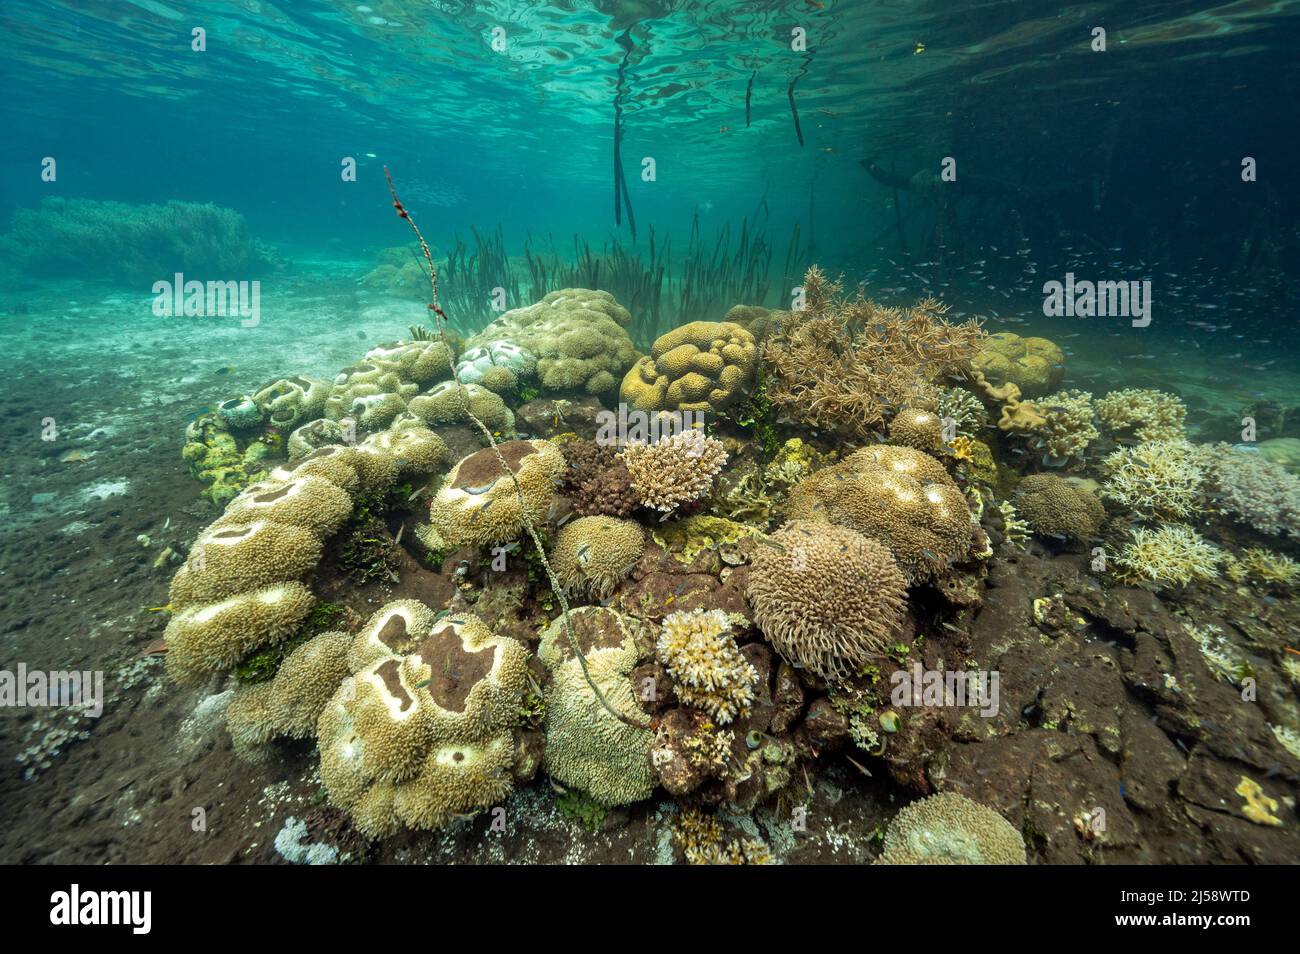 Manglares, pastos marinos y corales en un ecosistema de coral prístino, Raja Ampat Indonesia. Foto de stock